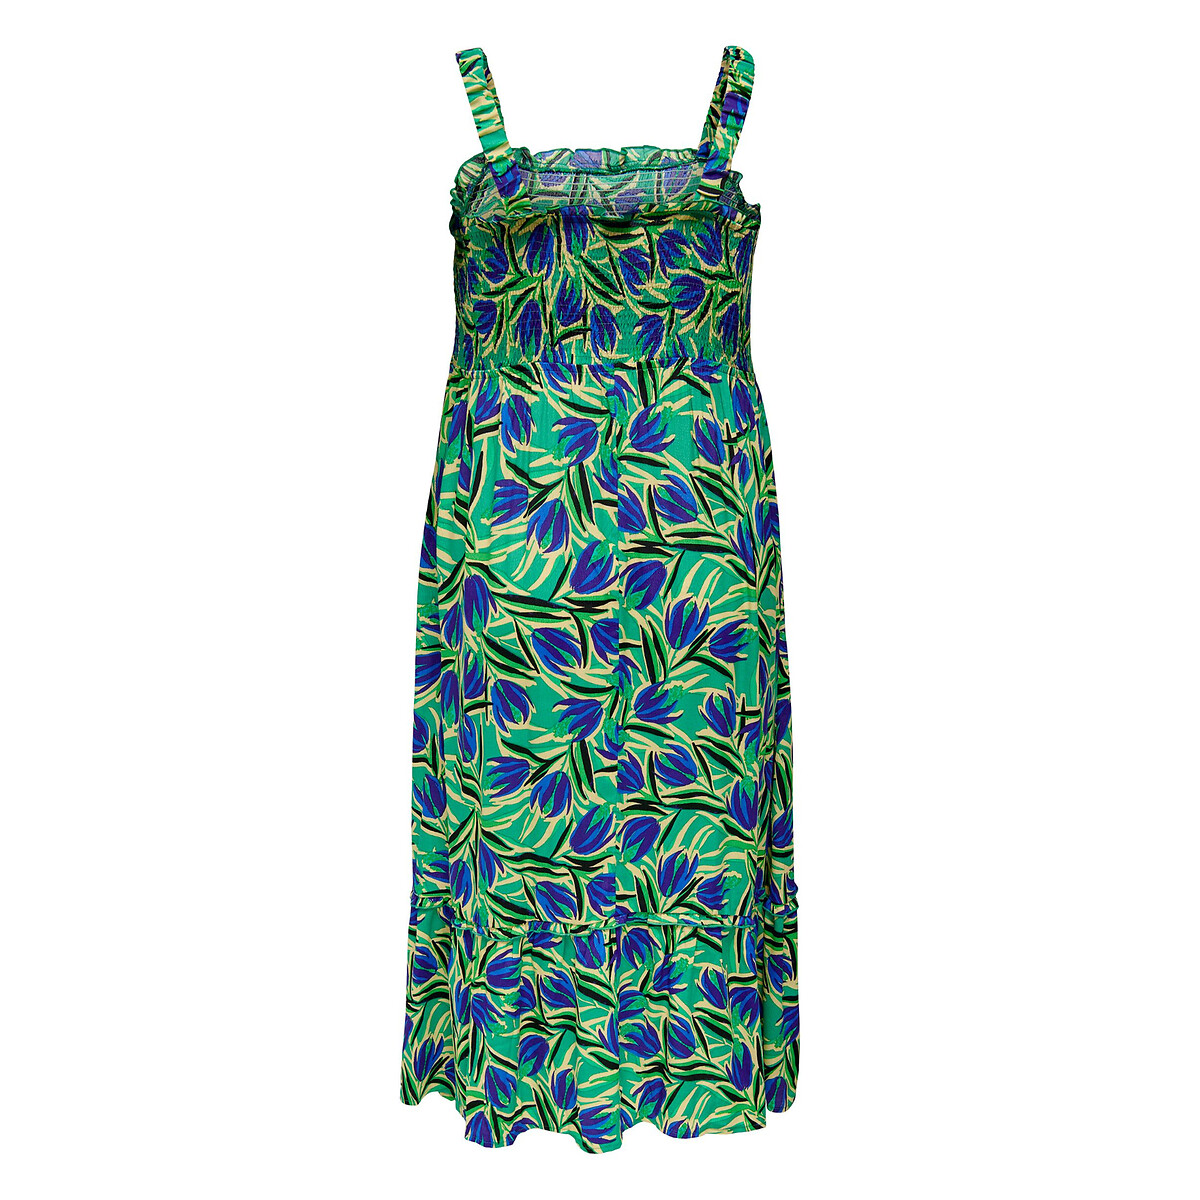 Платье Миди без рукавов с принтом 58 зеленый LaRedoute, размер 58 - фото 2